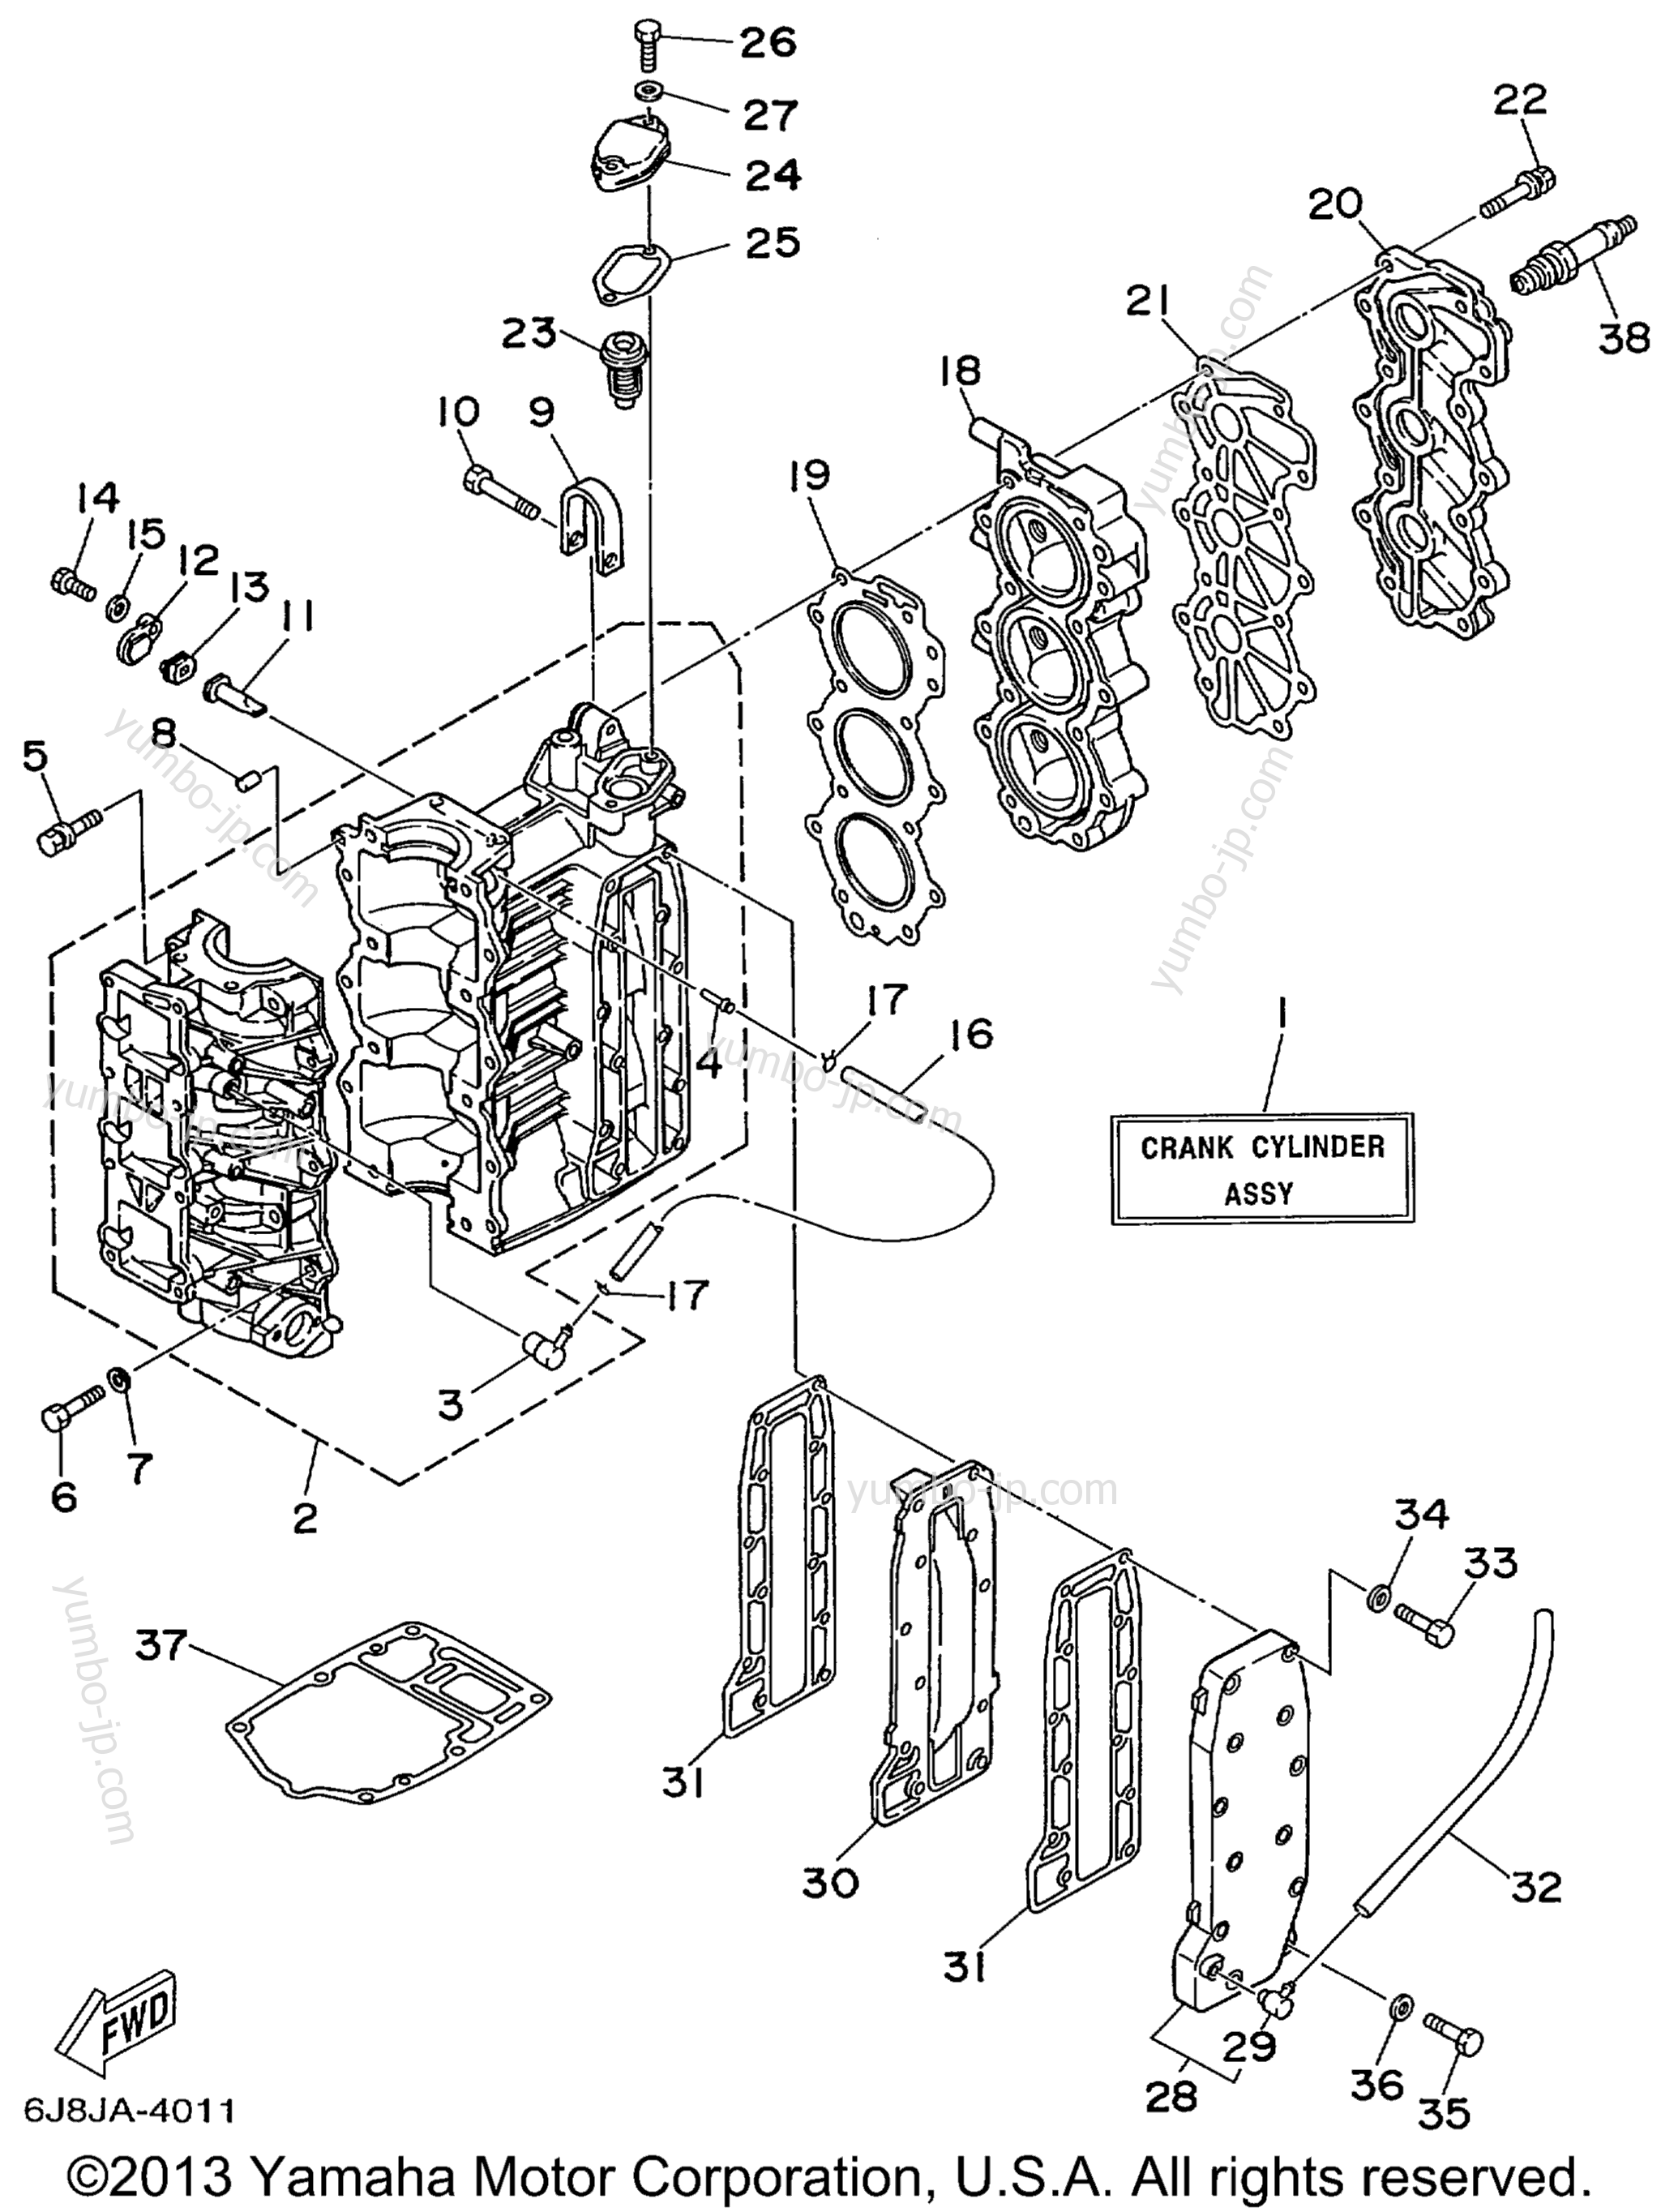 Cylinder Crankcase для лодочных моторов YAMAHA 30MSHX_MLHX_ELHX_ELRX (30ELRX) 1999 г.